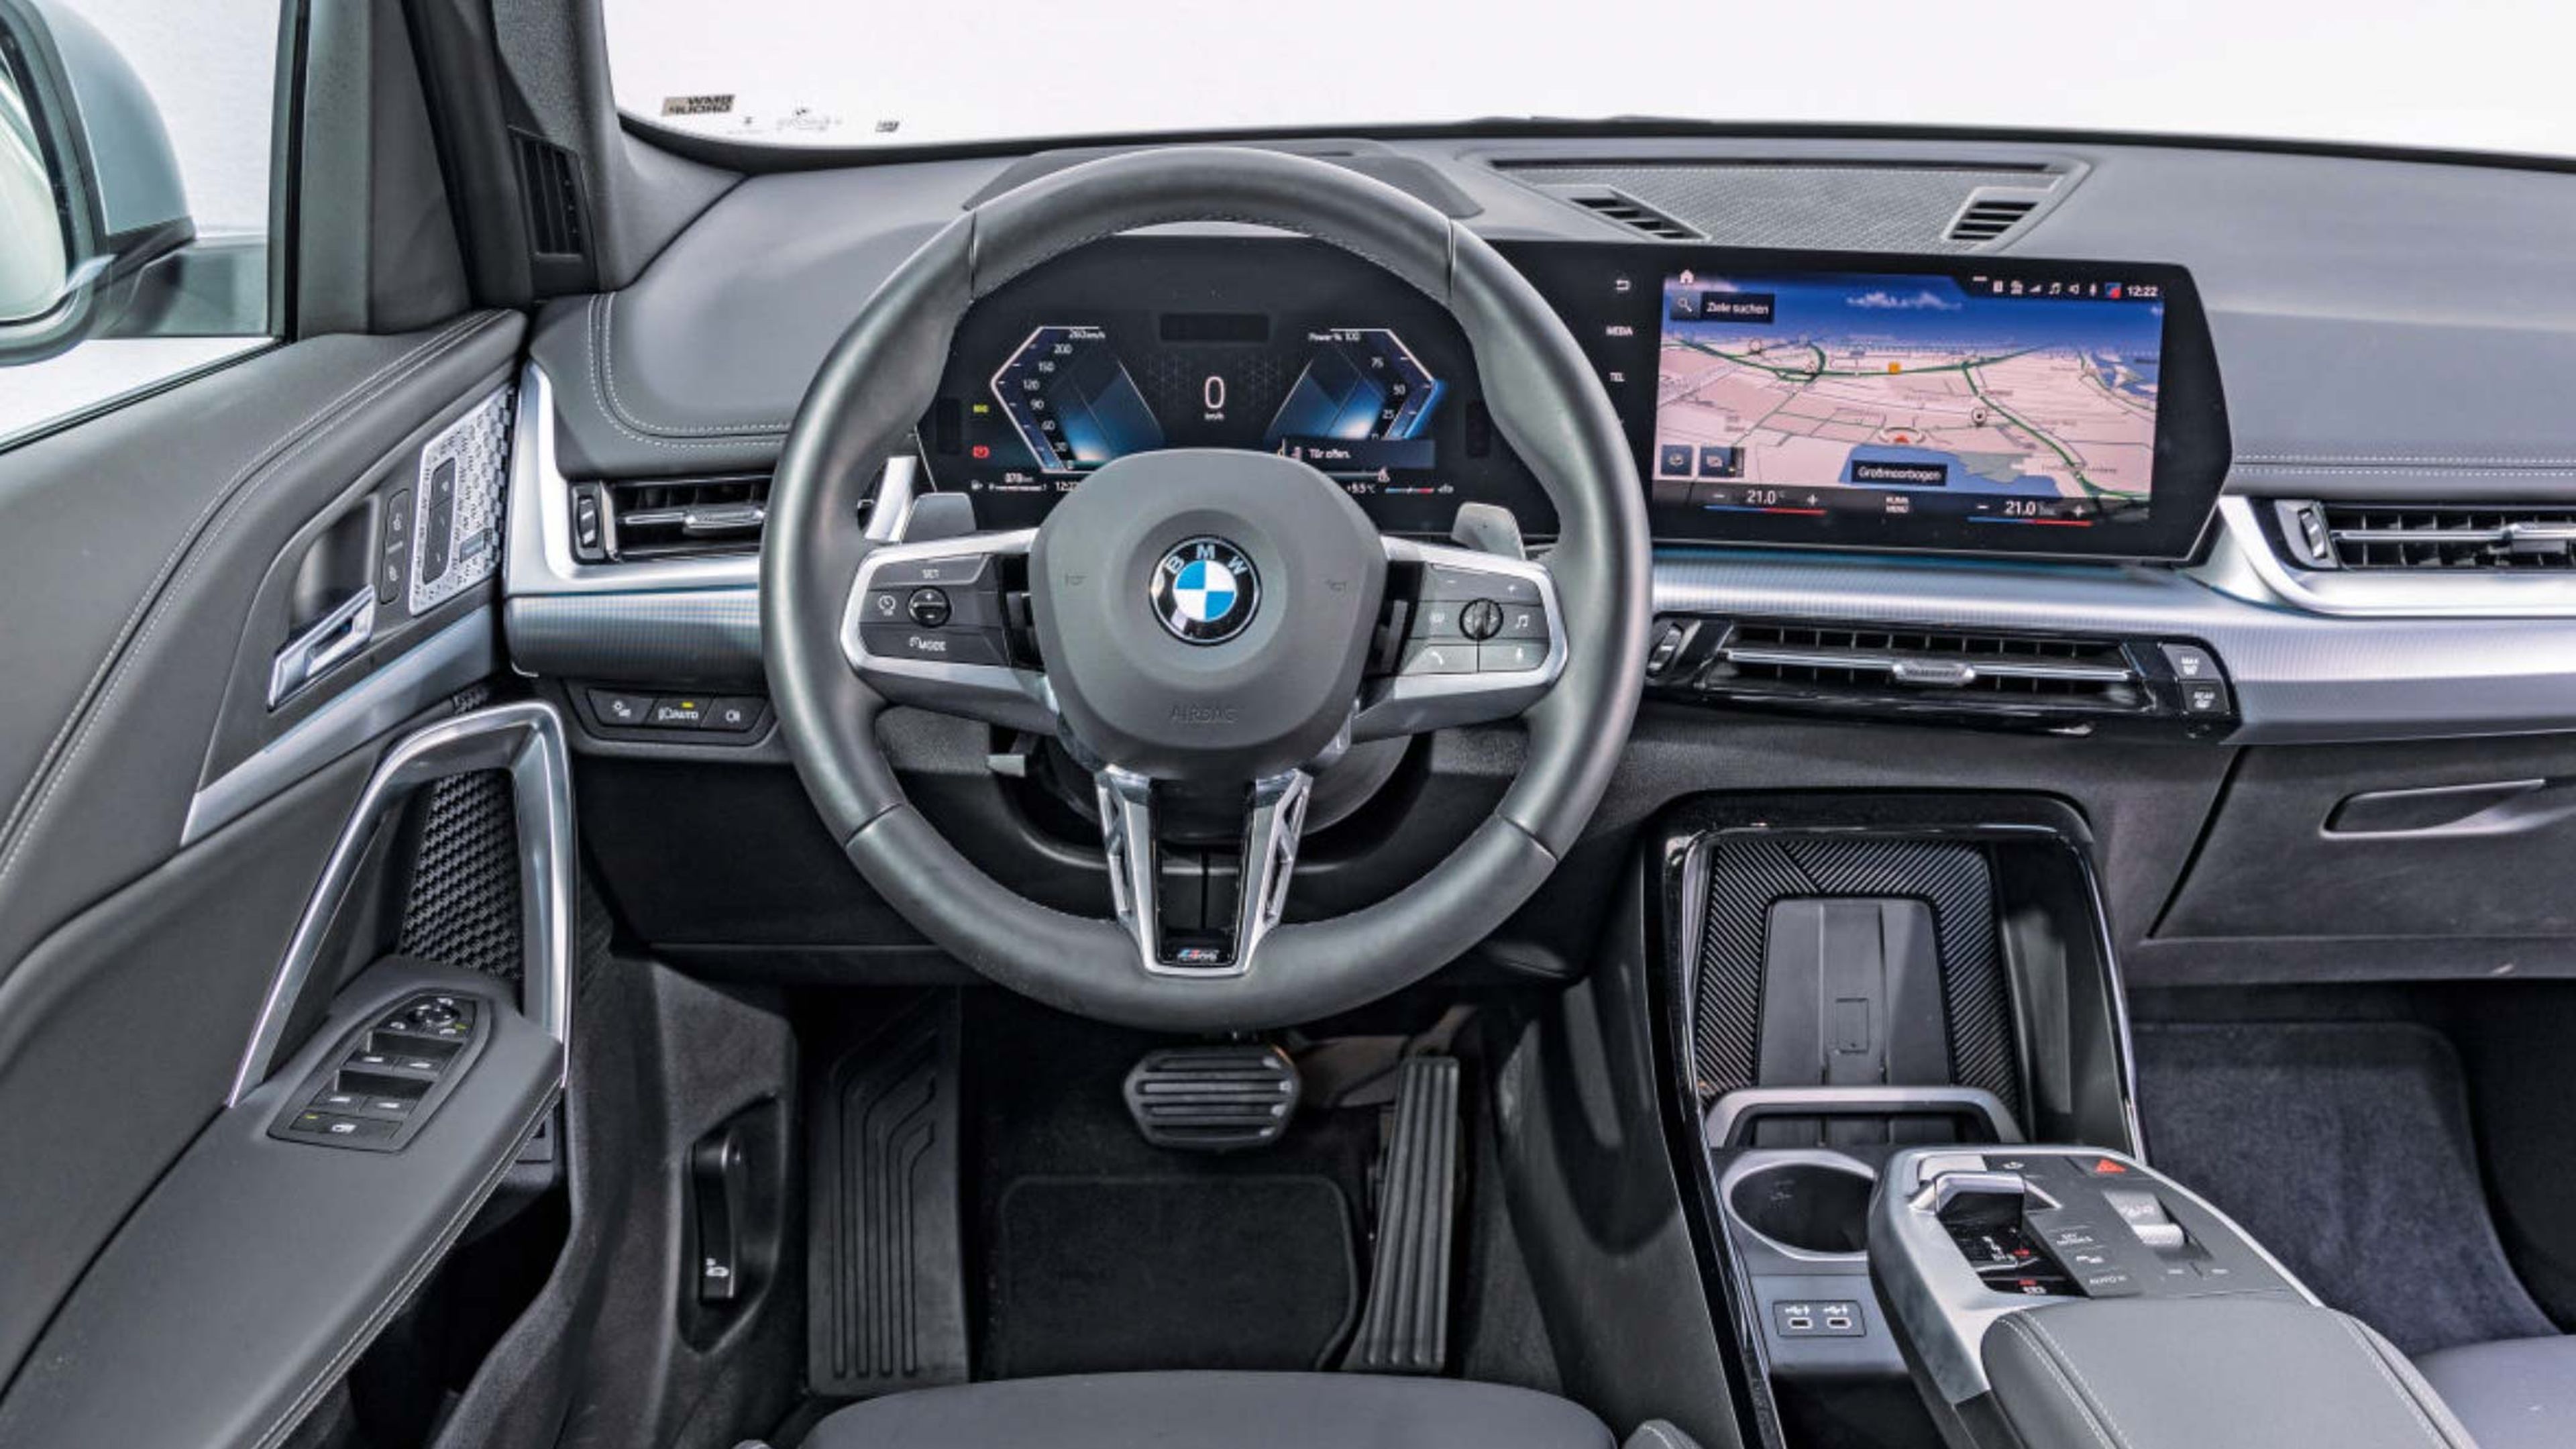 BMW X1 xDrive23d vs. Mercedes GLA 220 d 4Matic cockpit 2